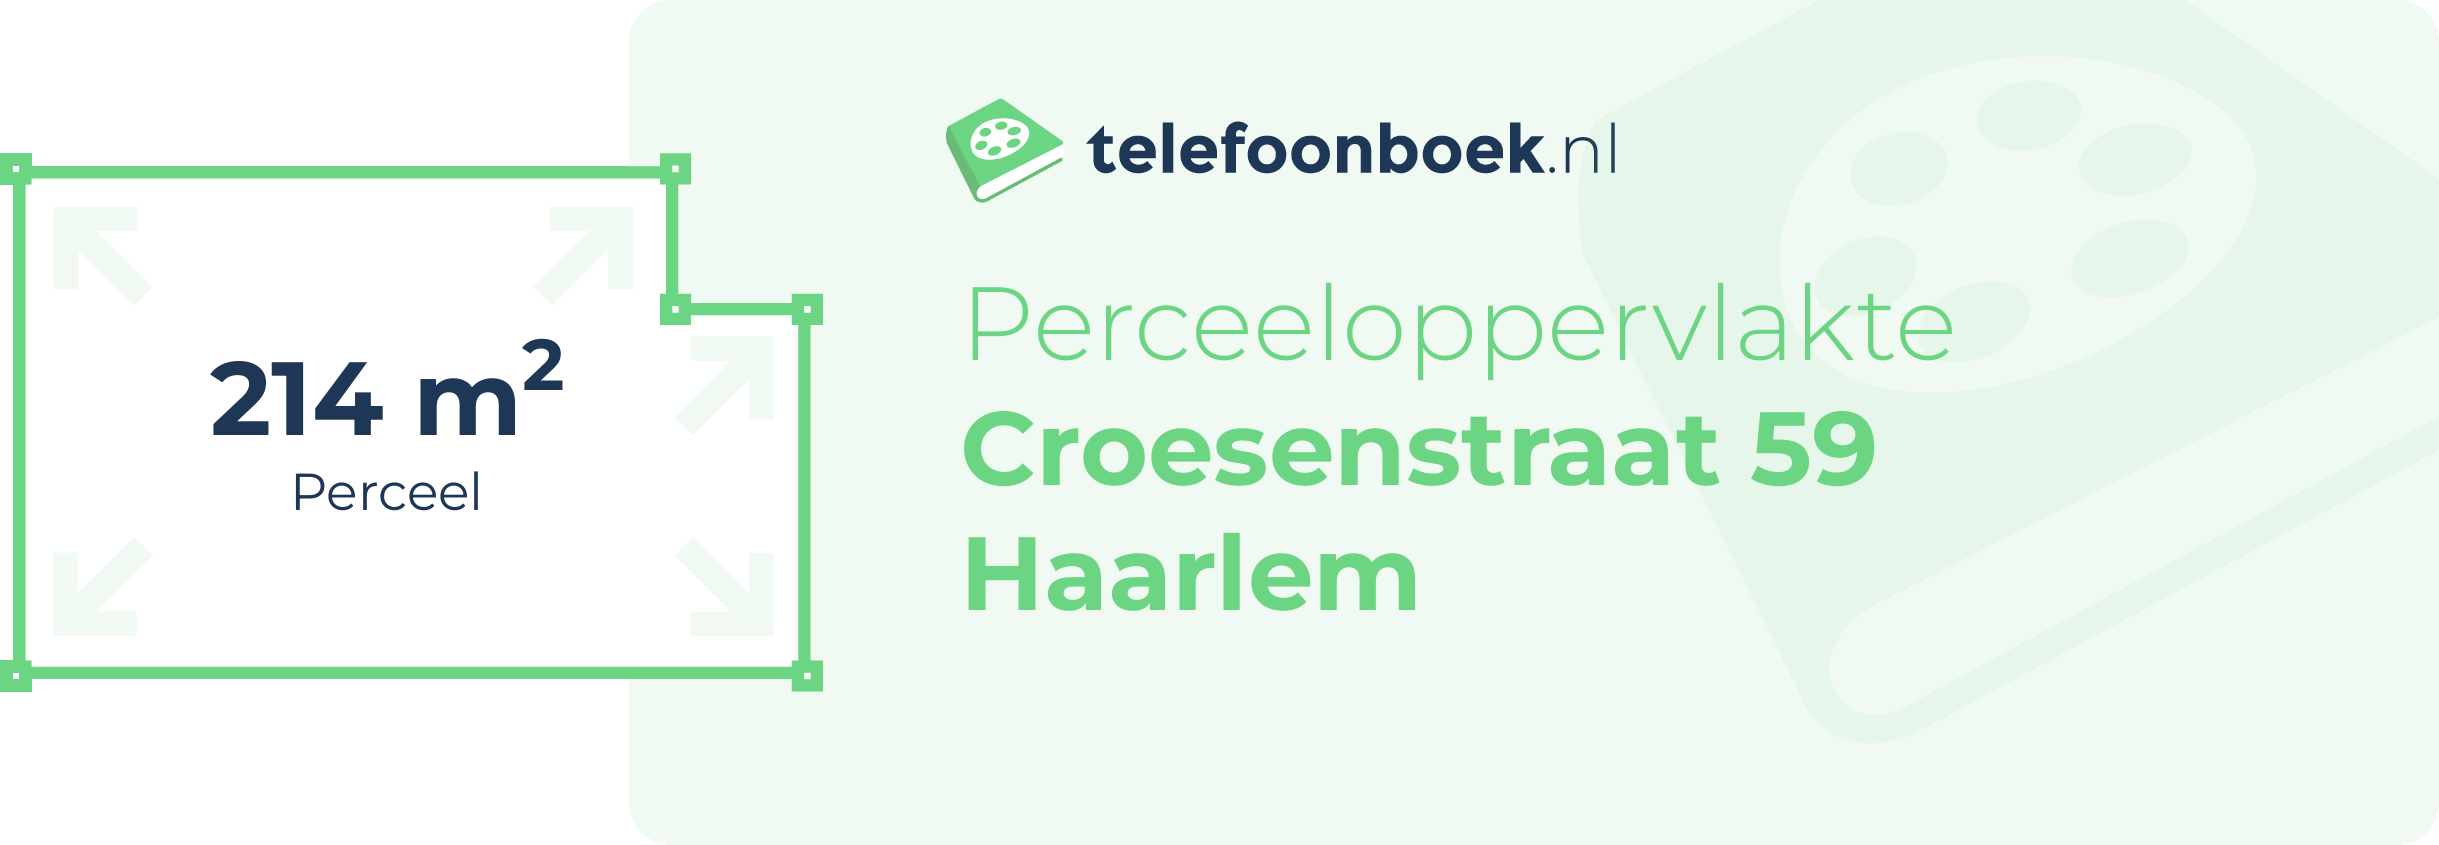 Perceeloppervlakte Croesenstraat 59 Haarlem